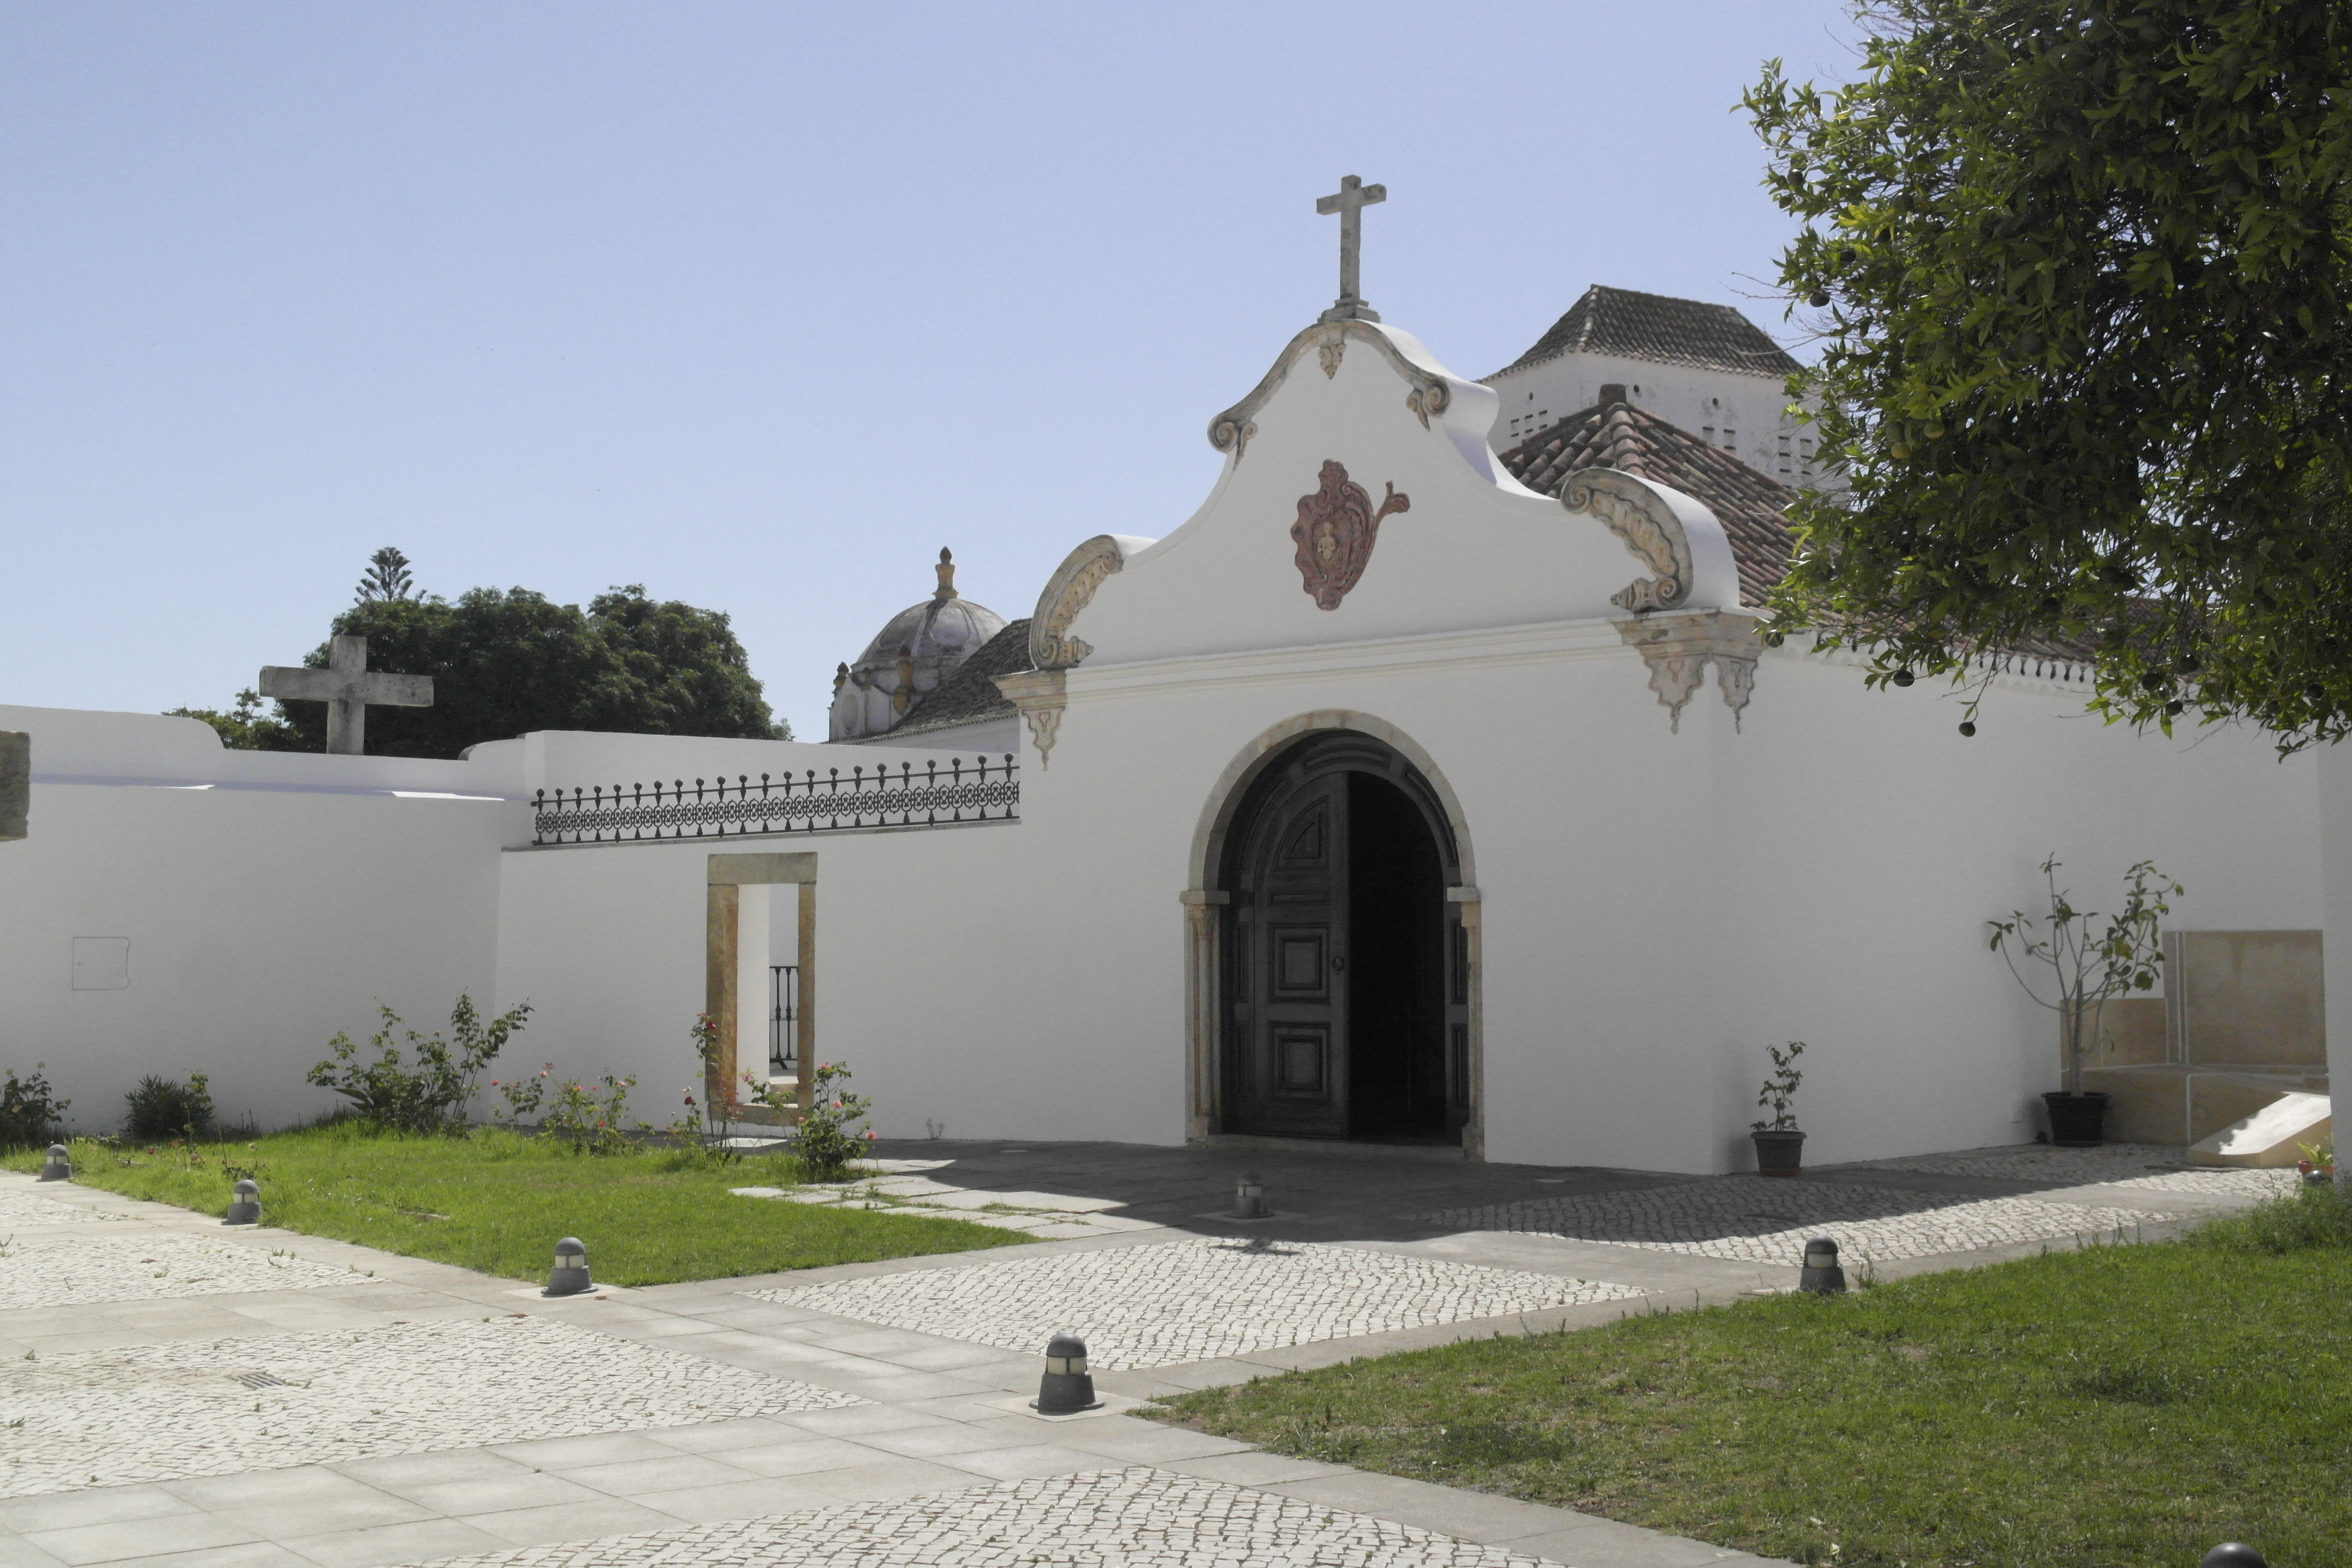 Entrée de chapelle blanche, croix au-dessus du fronton arrondi, petit jardin devant